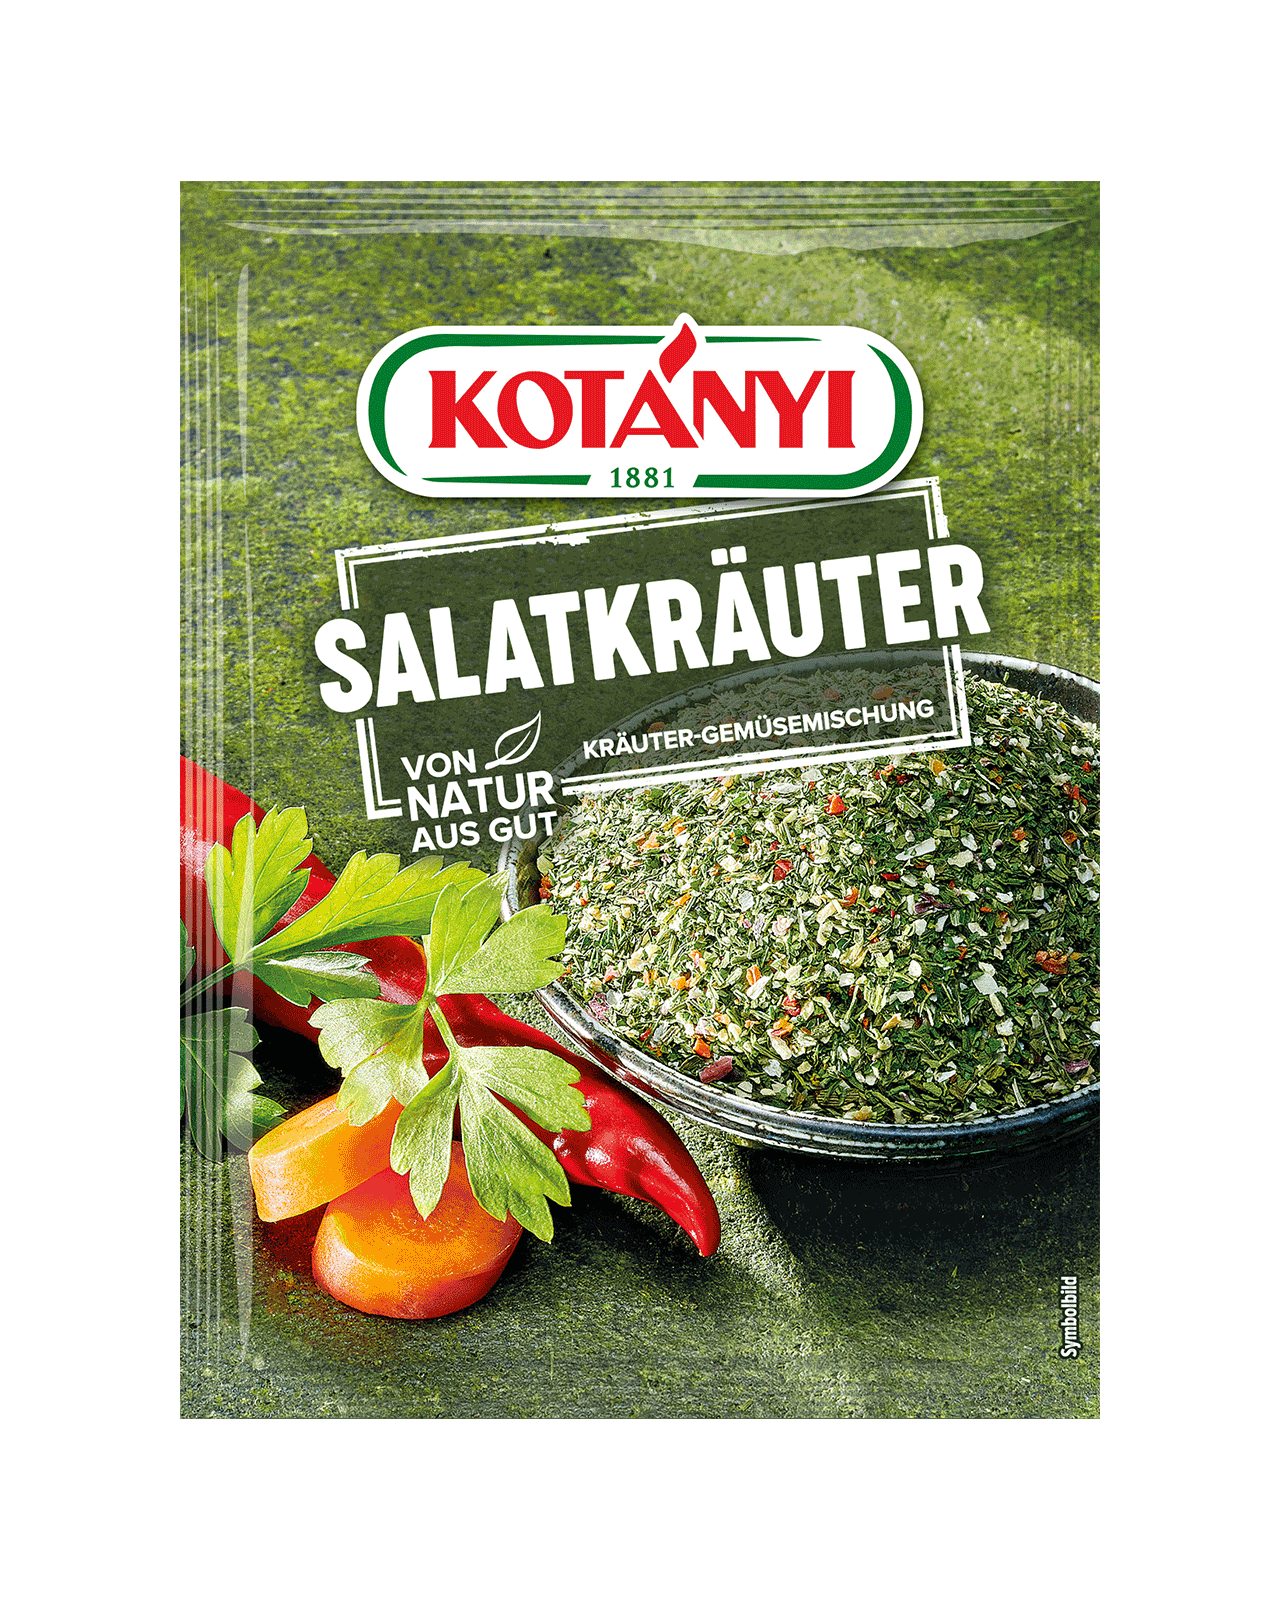 9001414016022 160201 Kotányi Salatkräuter Kräuter Gemüsemischung At Pouch Vs